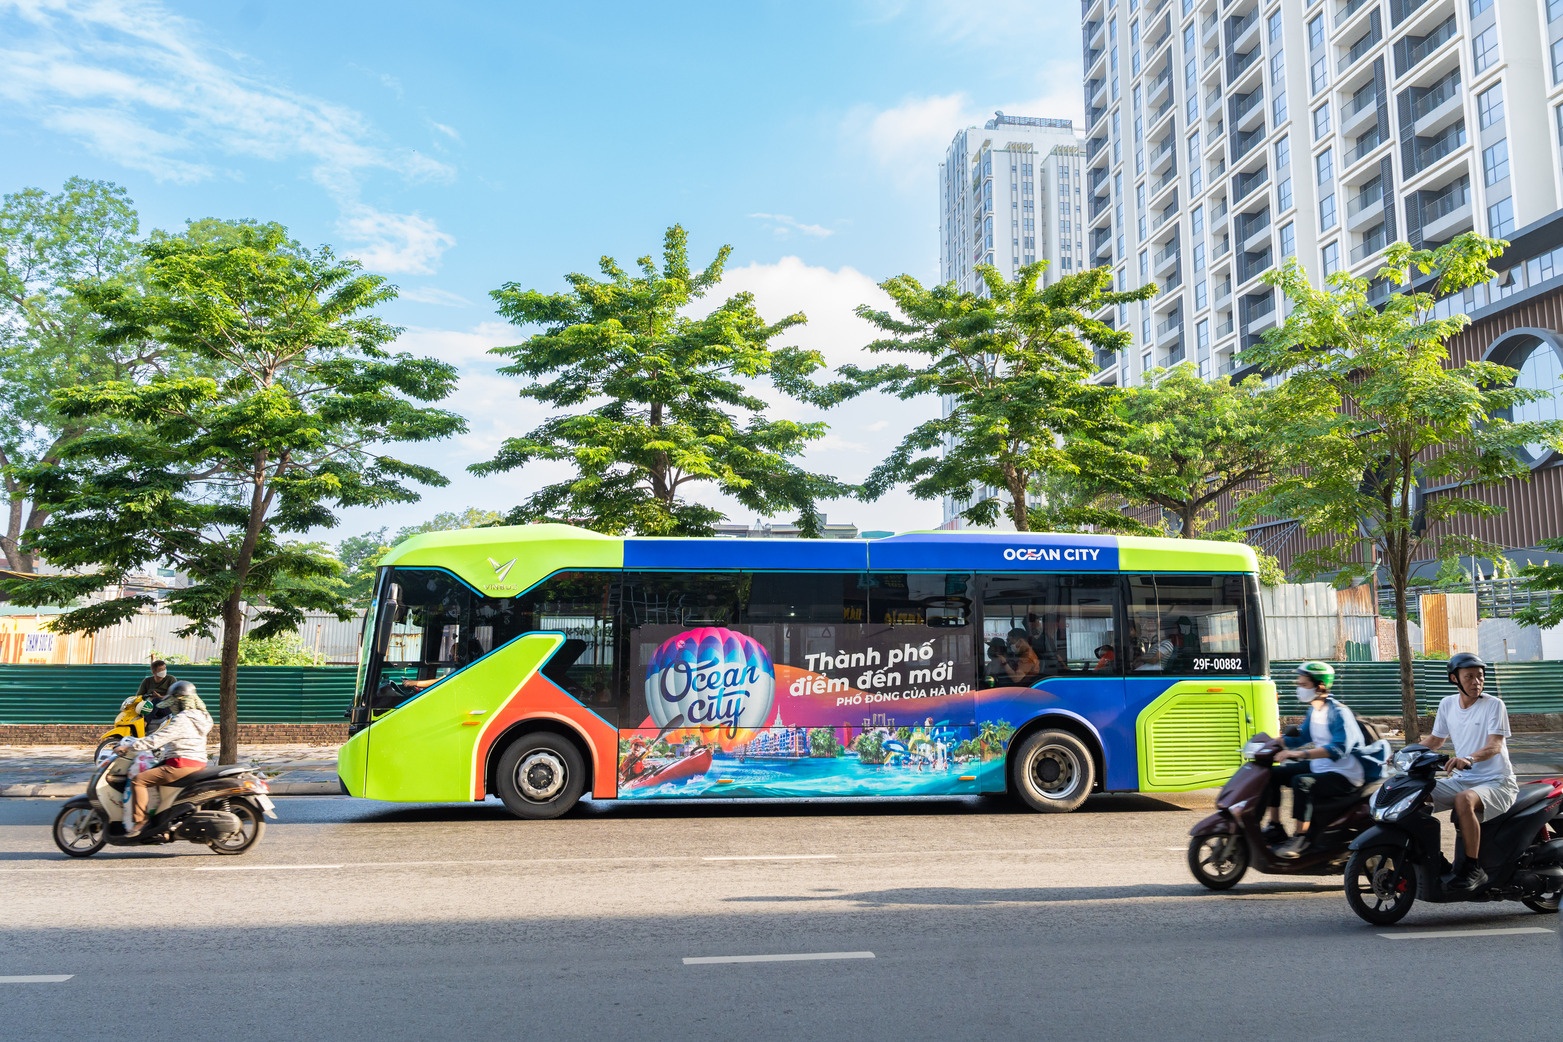 Vinhomes cũng triển khai các tuyến xe bus Ocean City Bus miễn phí để du khách có thể trải nghiệm và tham quan các địa điểm nổi bật tại Ocean City